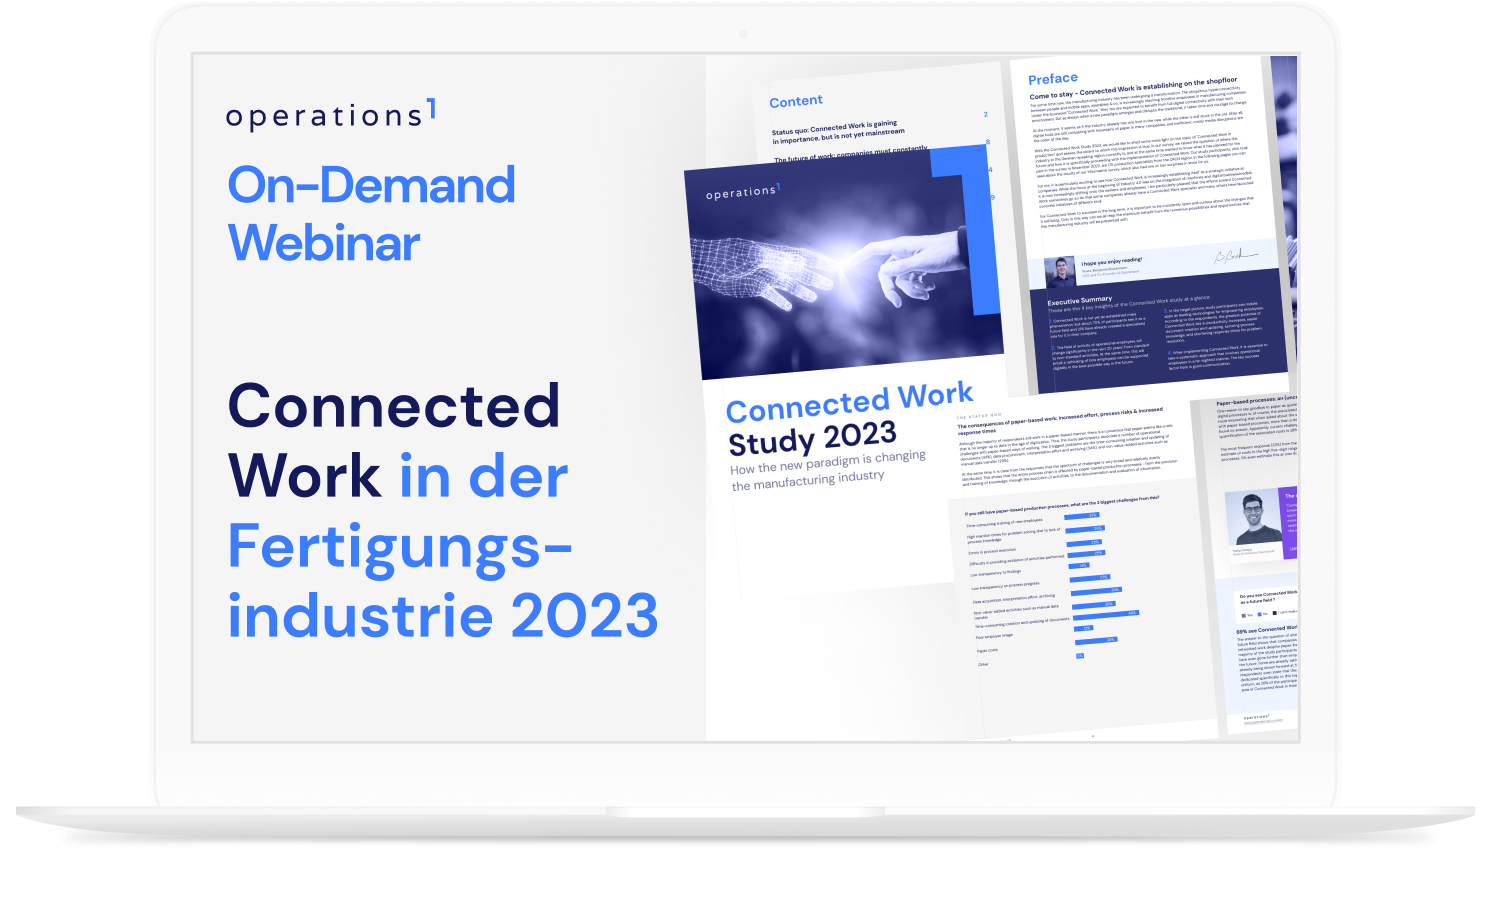 Erfahren Sie in der Panel Diskussion die neusten Erkenntnisse der Studie zu Connected Work in der Fertigungsindustrie 2023